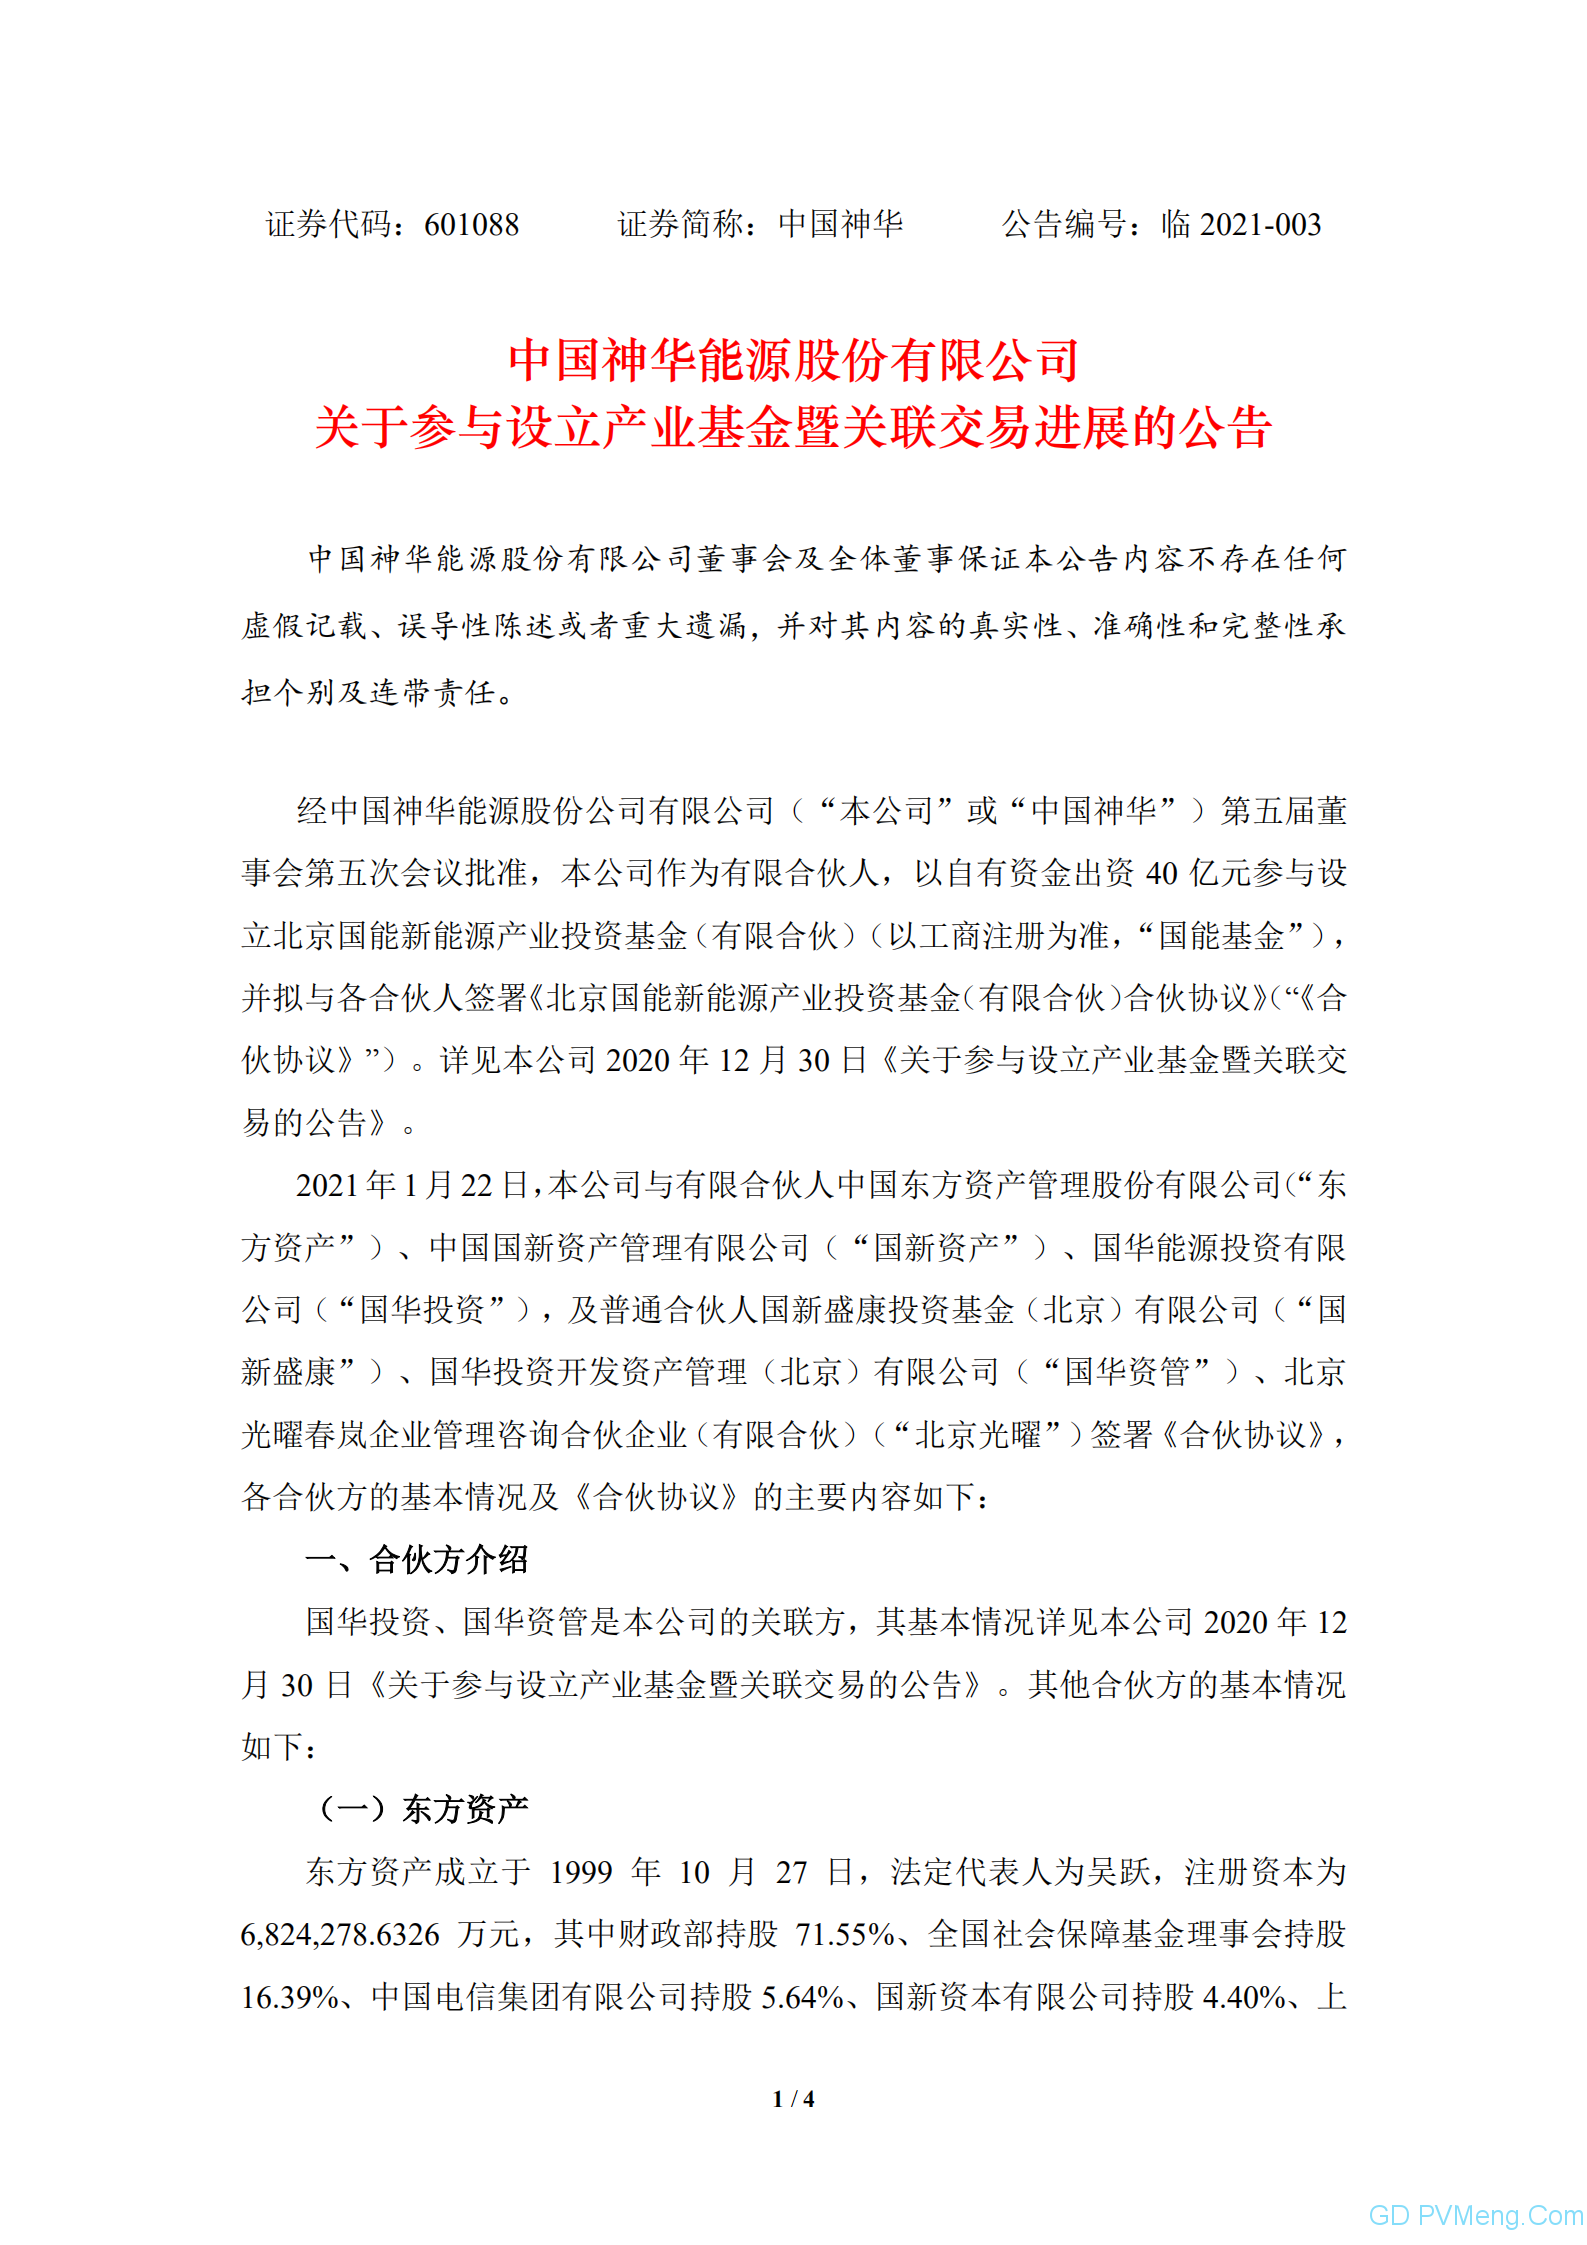 中国神华：关于参与设立产业基金暨关联交易进展的公告20210122